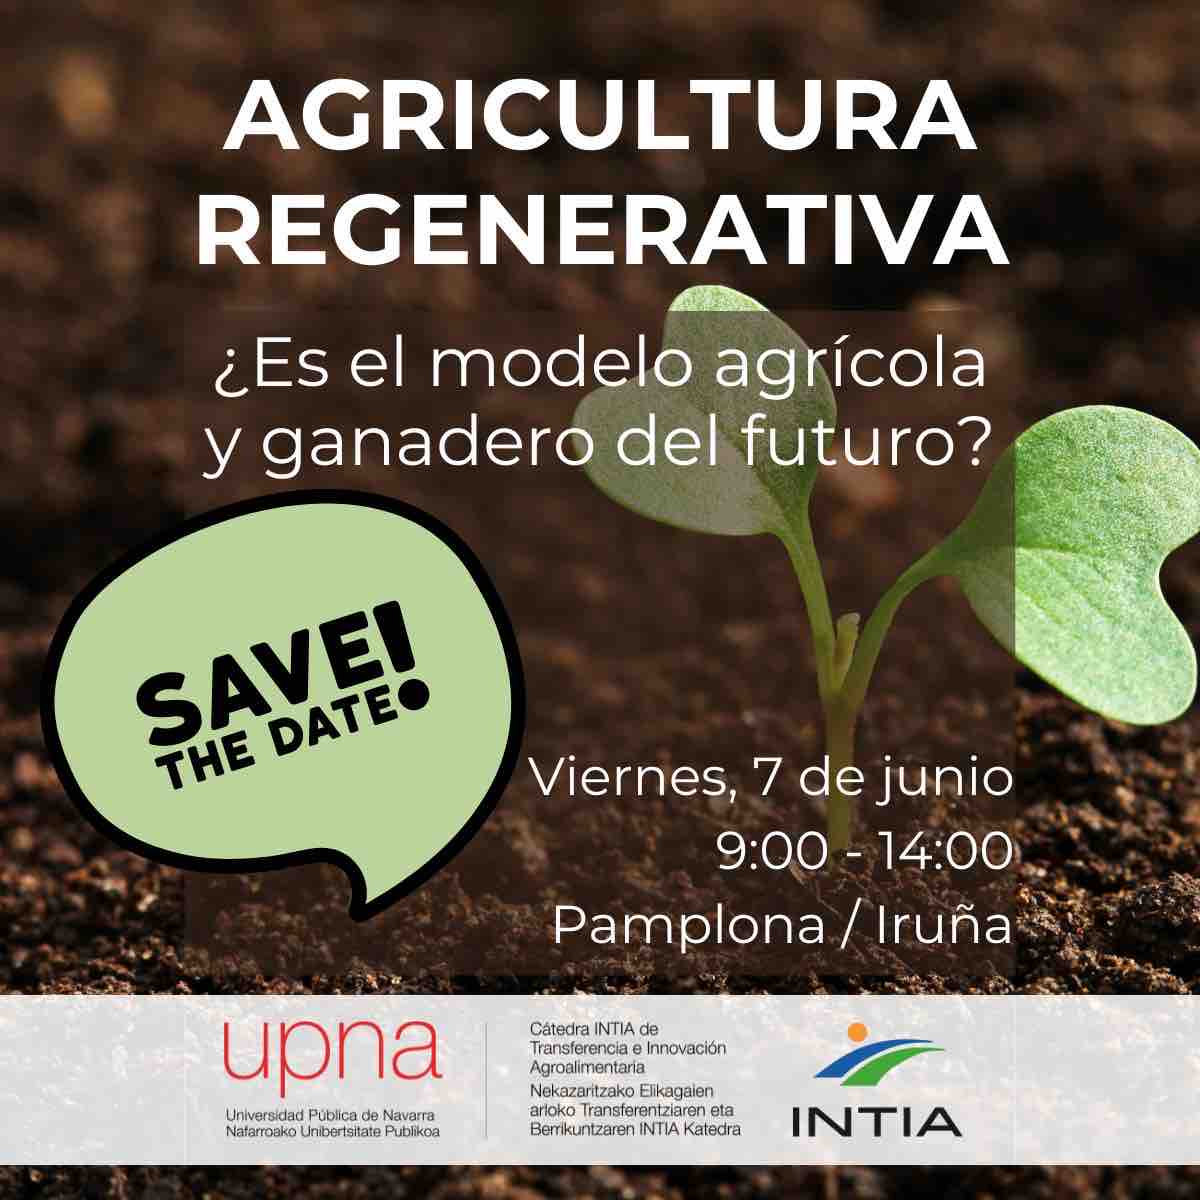 #SaveTheDate 

Jornada sobre Agricultura Regenerativa organizada por la Cátedra INTIA - UPNA.

🗓️Viernes, 7 de junio
🕙9:00 - 14:00 h.
📍Pamplona / Iruña

Inscripción⤵️ bit.ly/JornadaAgricul…

+INFO⤵️
intiasa.es/web/es/noticia…

#AgriculturaRegenerativa #Navarra